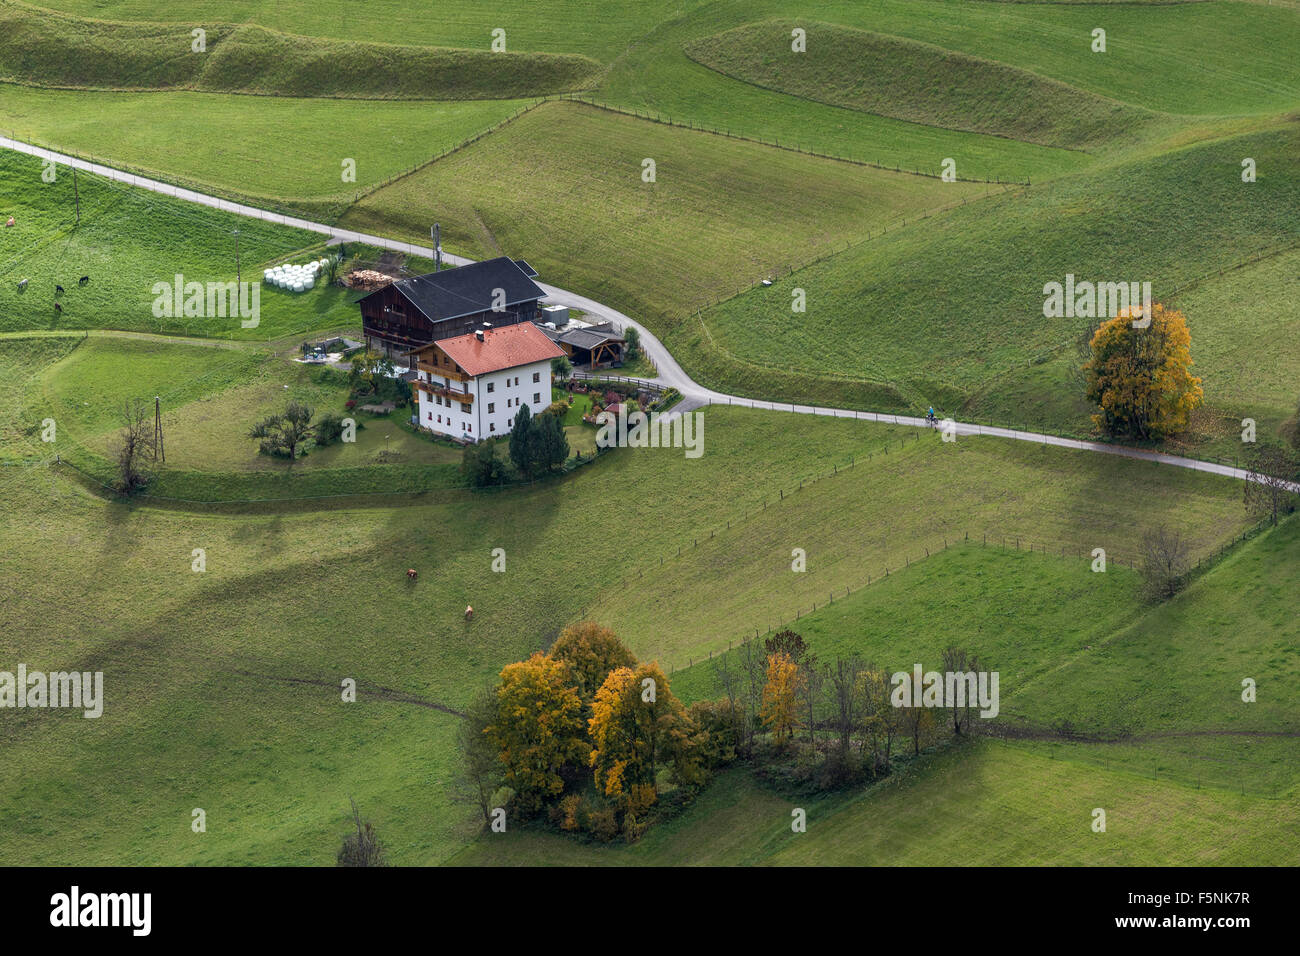 Farmyard, meadows, autumn coloured trees, Welzlach, Virgental, East Tyrol, Austria Stock Photo